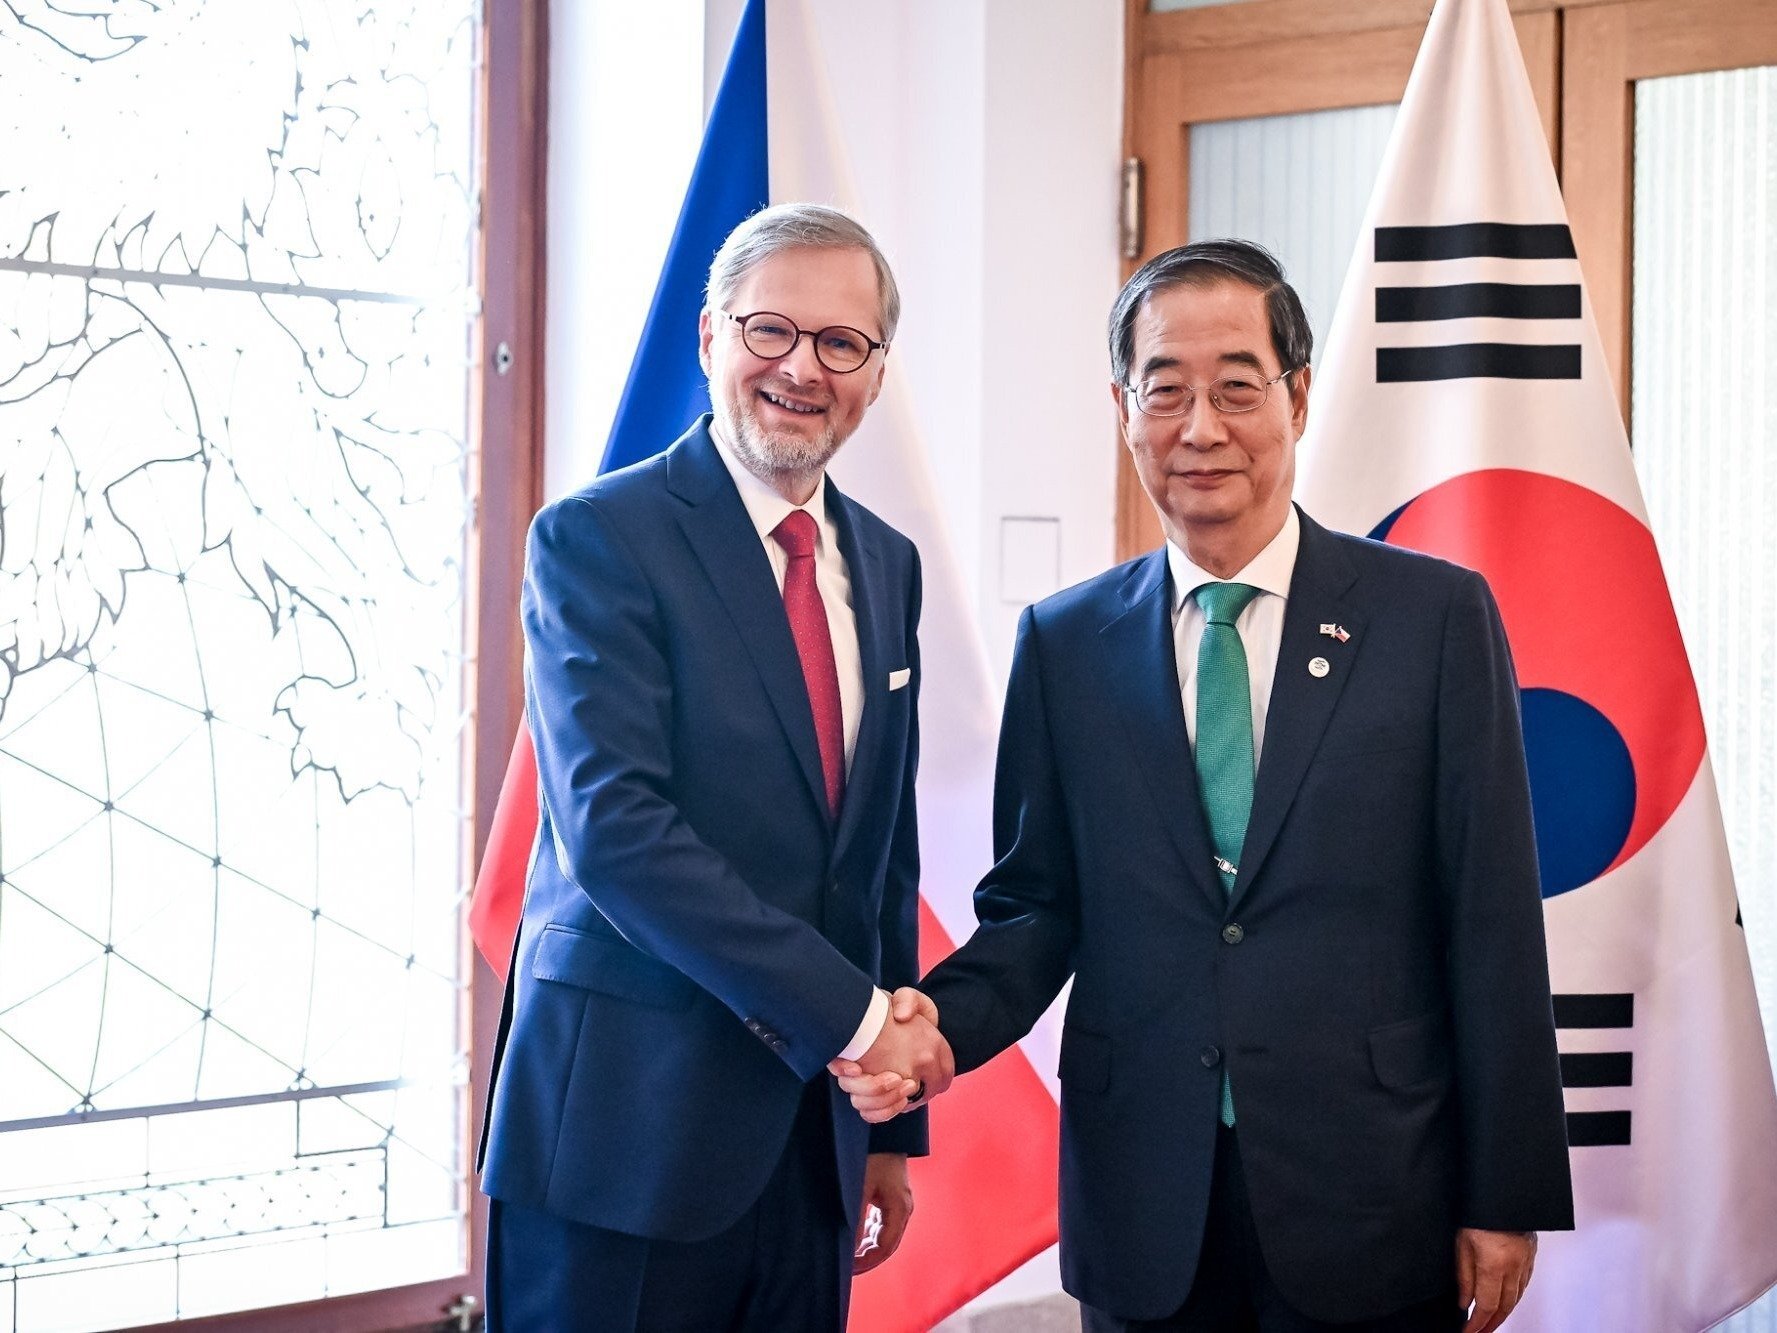 Fiala beriet mit südkoreanischem Premier über Atomkraft, Eisenbahn und die Ukraine